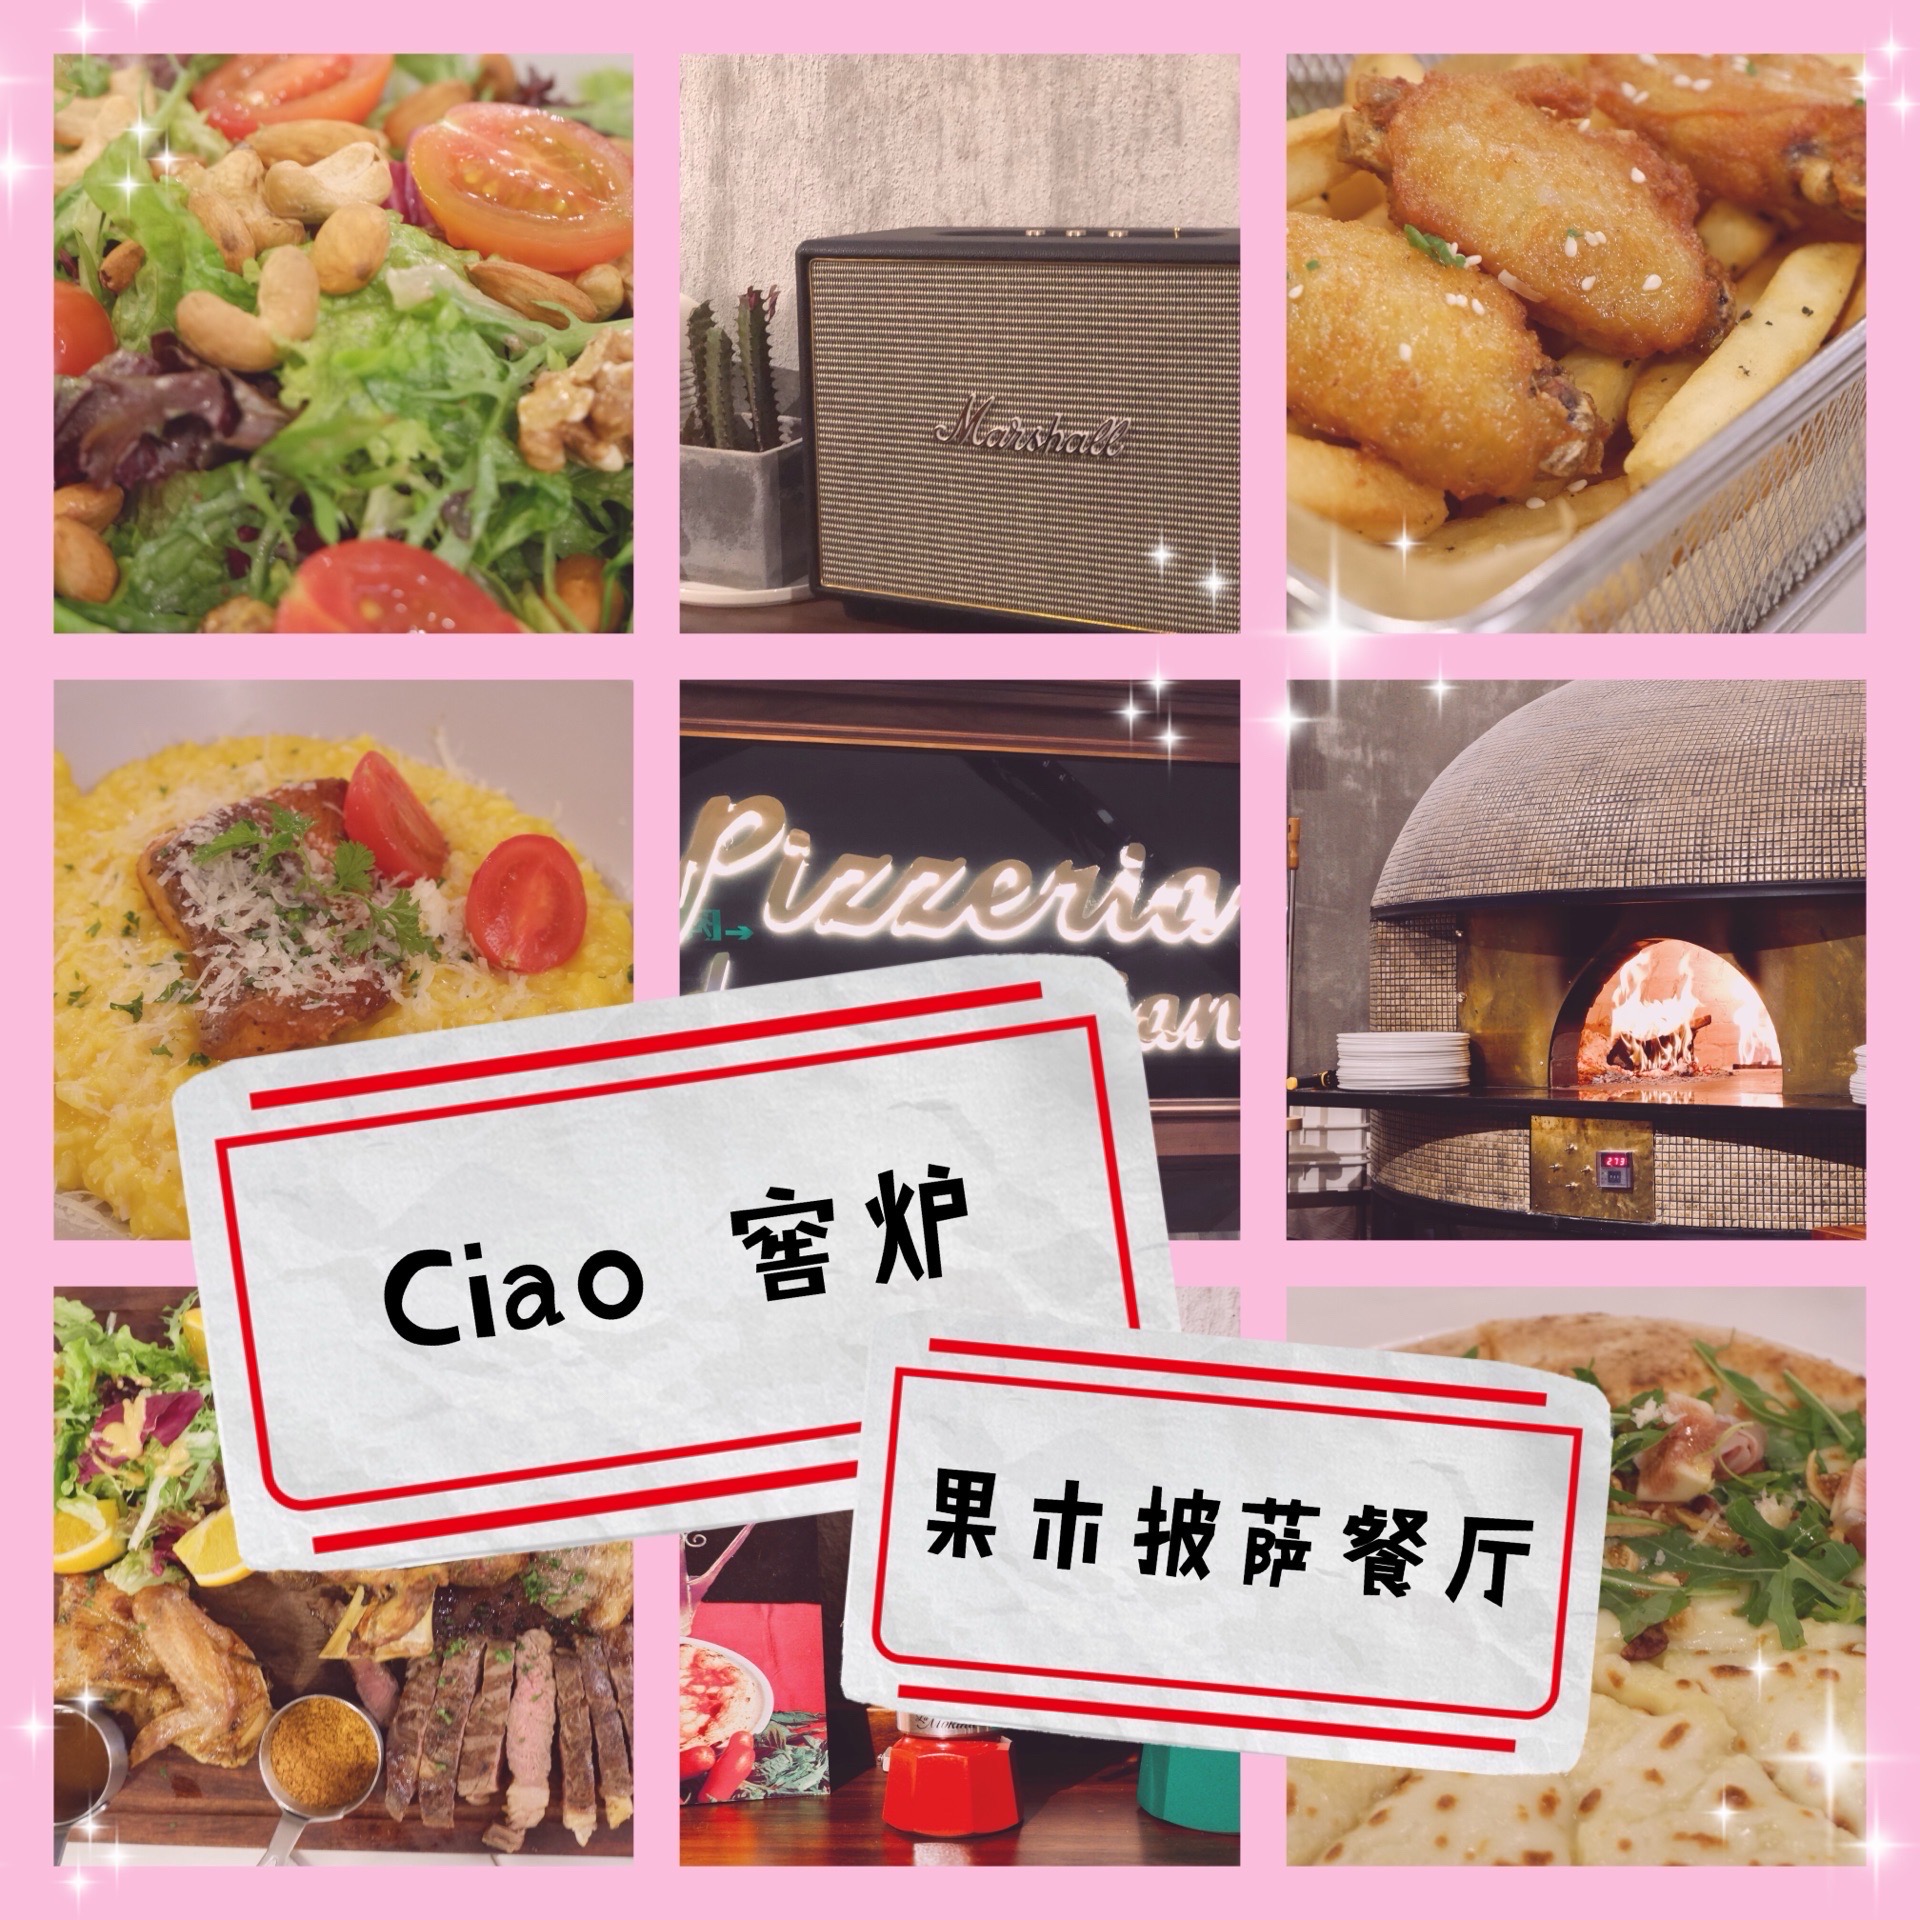 宁波美食|年会盛宴开篇之Ciao窖炉果木披萨餐厅  2019年的年终盛宴在Ciao窖炉果木披萨餐厅拉